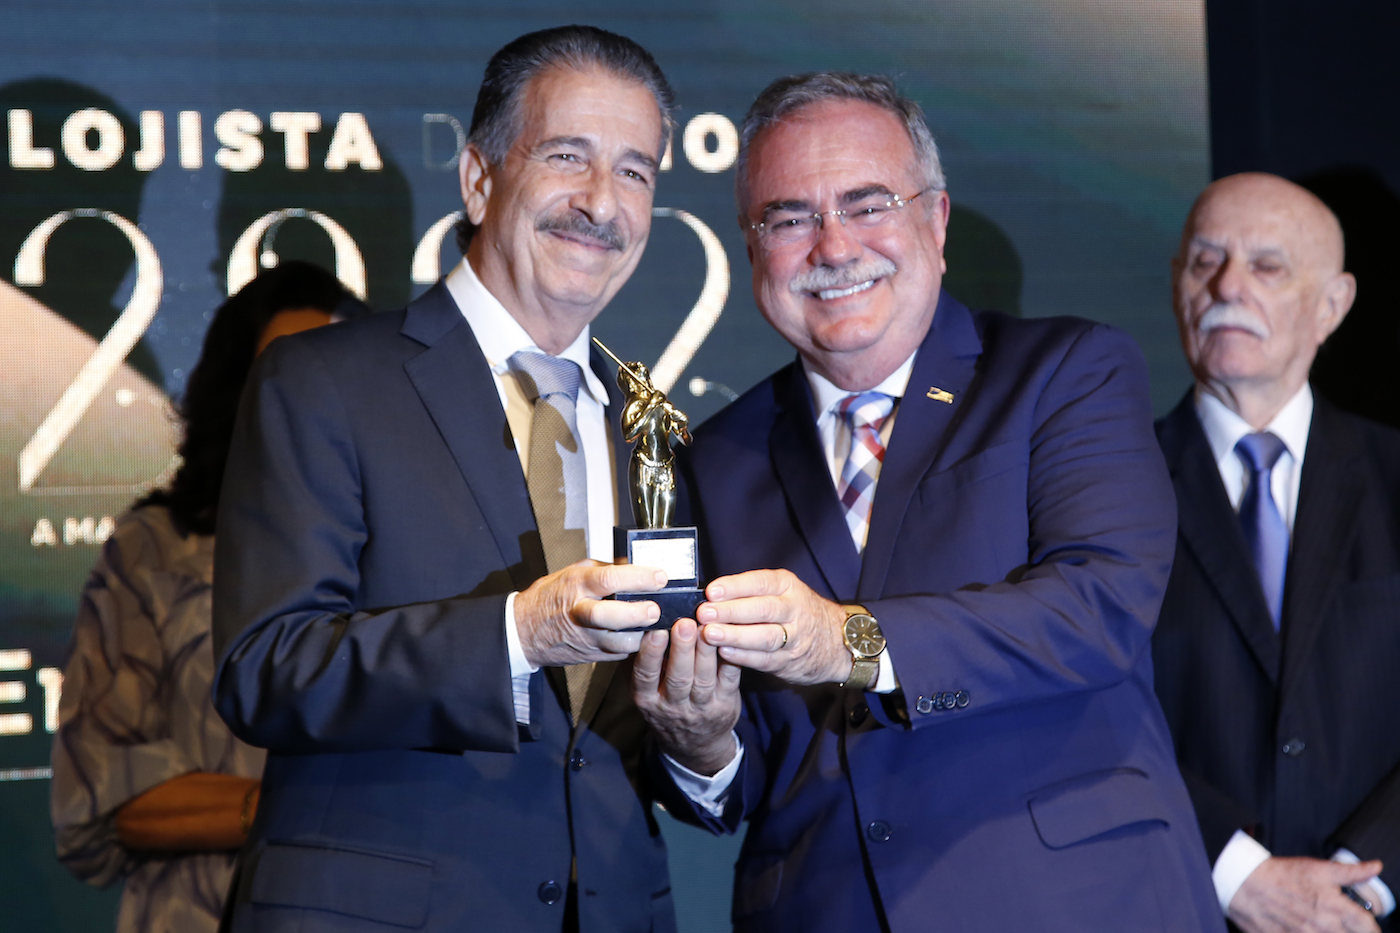 CDL Fortaleza entrega troféu de Lojista do Ano a Emílio Ary Filho